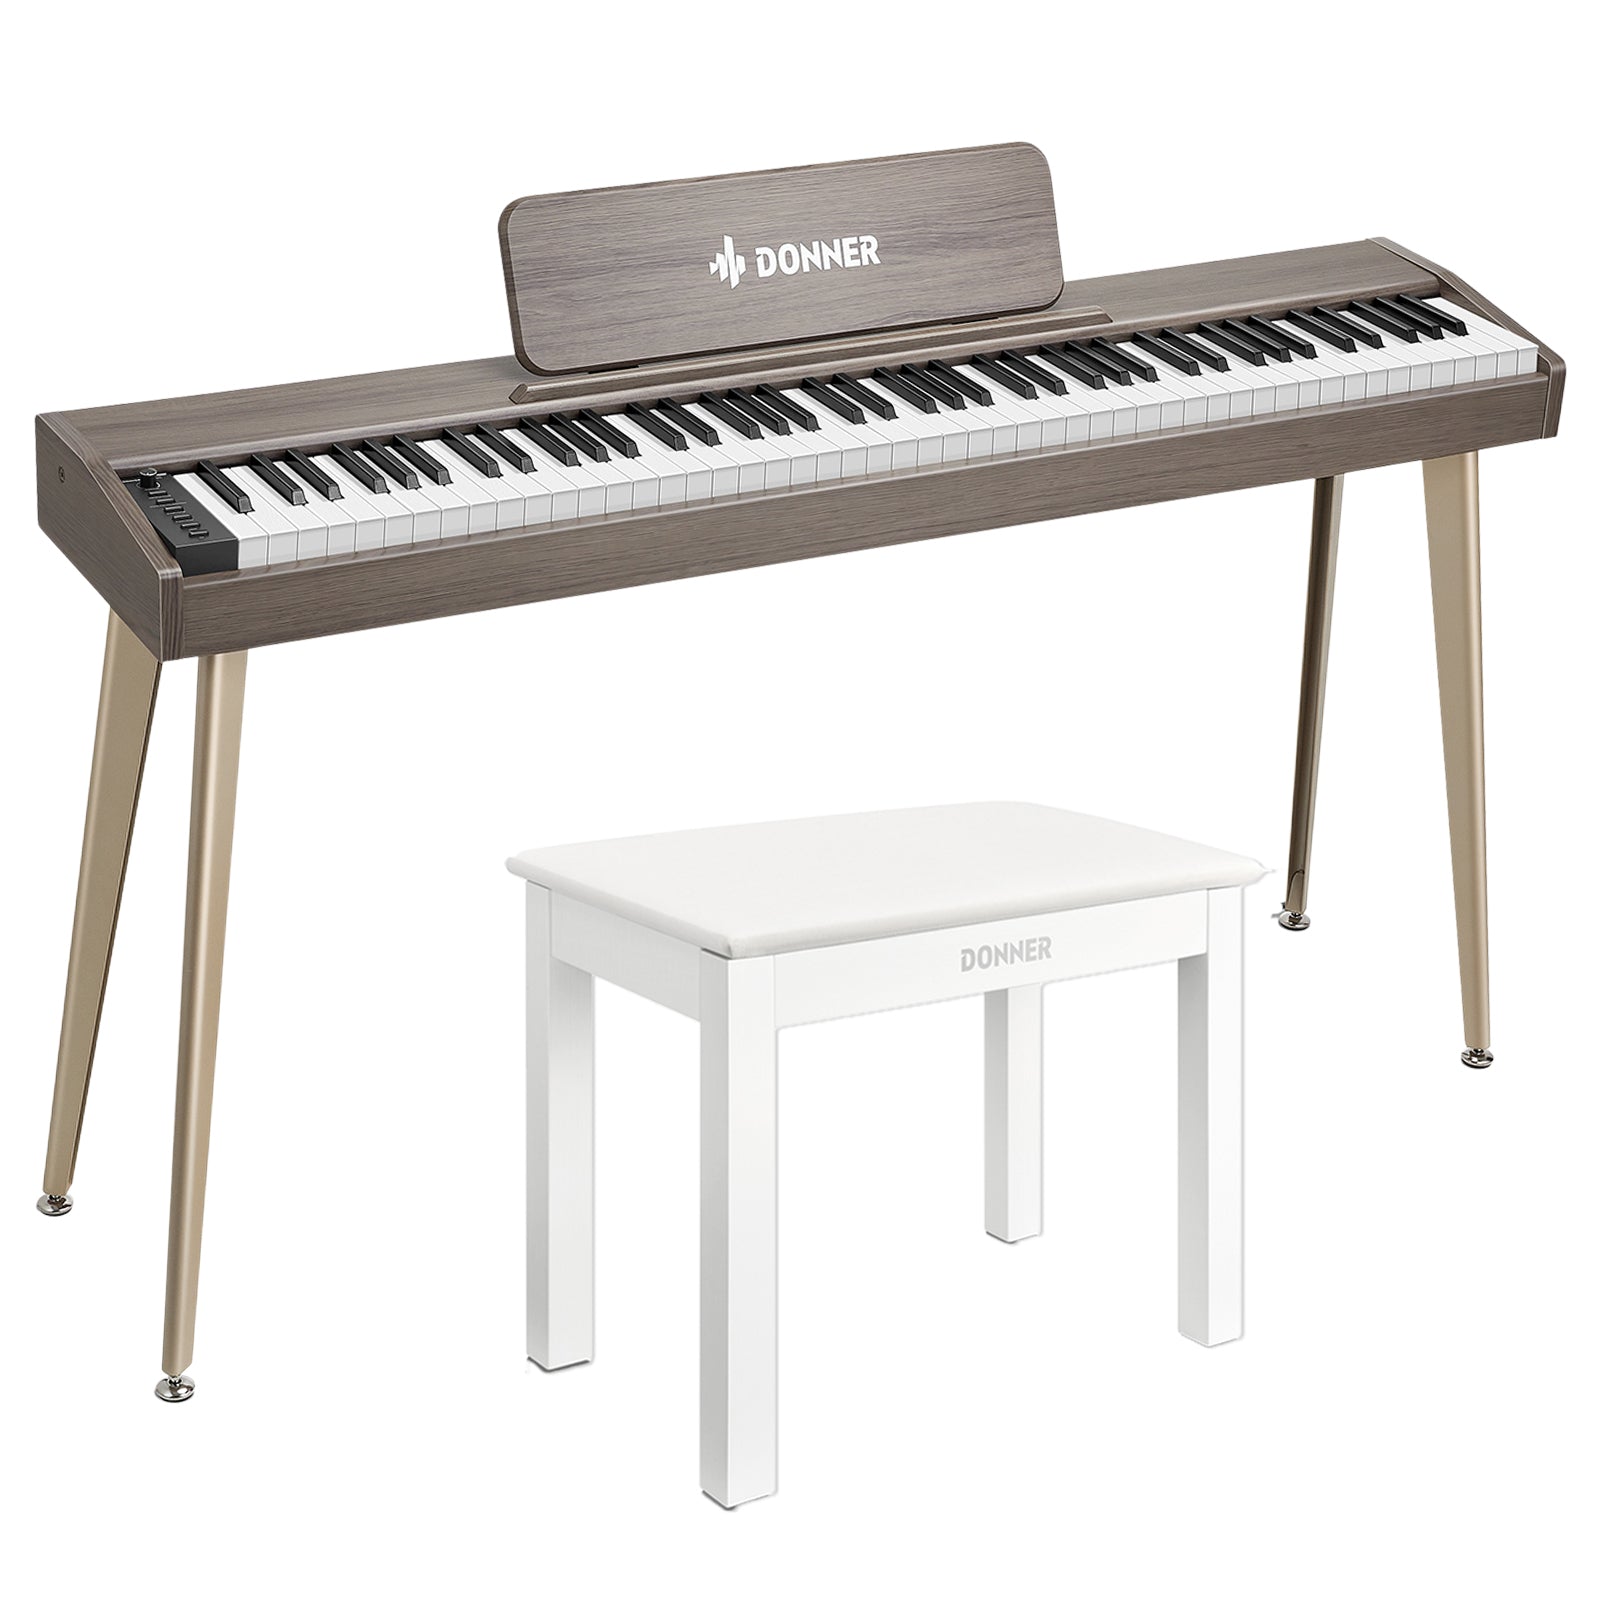 Donner DDP-60 Digitalpiano - Grau-Braun / Piano + Klavierbank Weißer von Donner